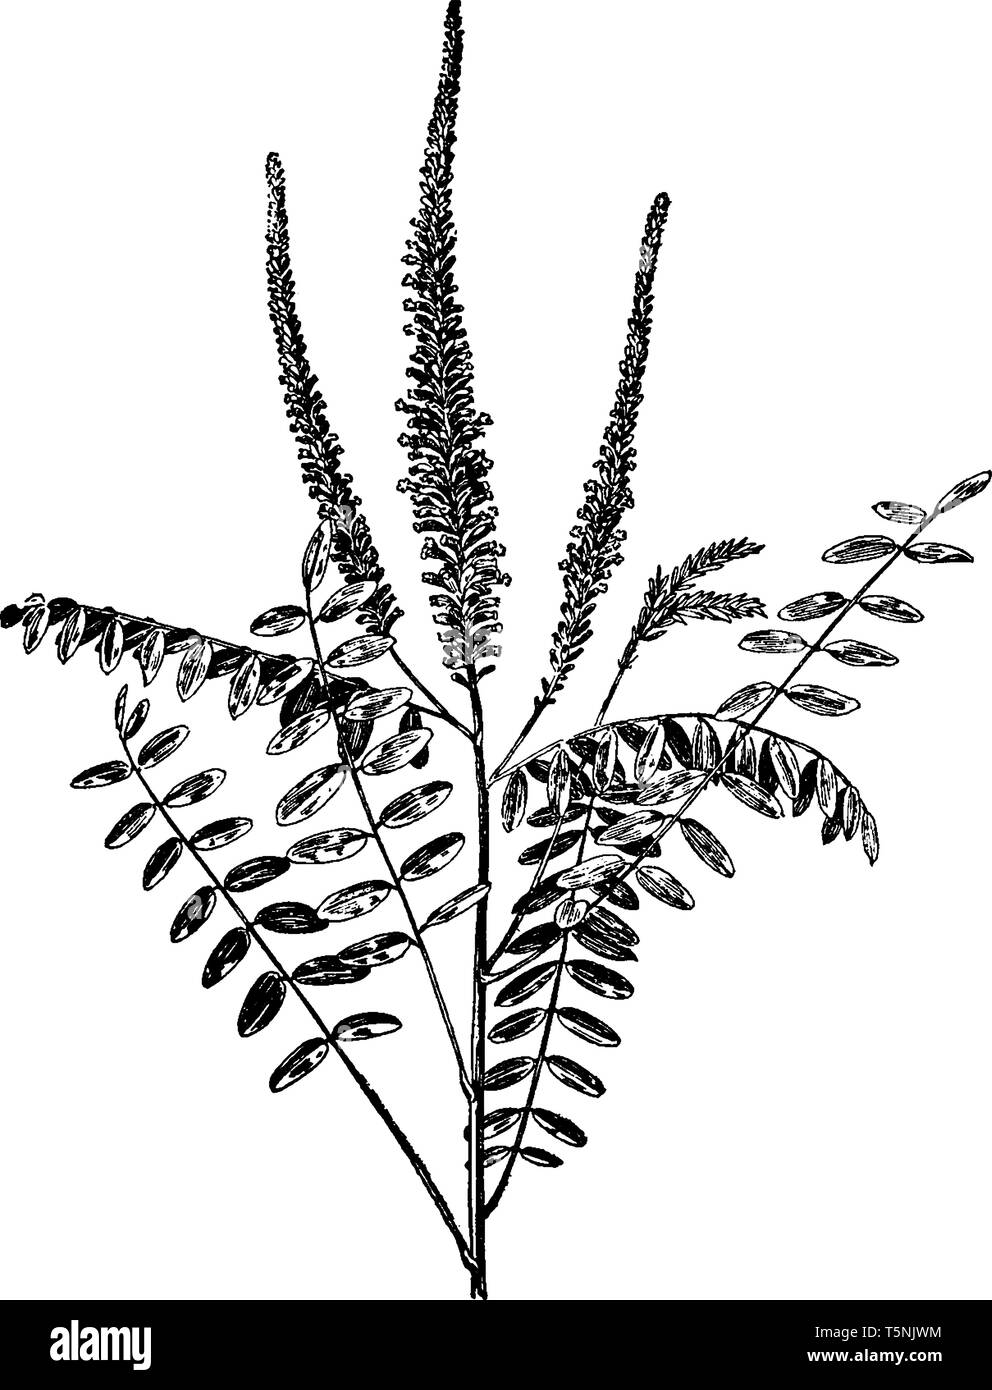 Ein Bild zeigt Amorpha Fruticosa Werk & seine Teile. Diese Art von Pflanze in Leguminosen Familie durch den gemeinsamen Namen bekannt, darunter Wüste false Stock Vektor